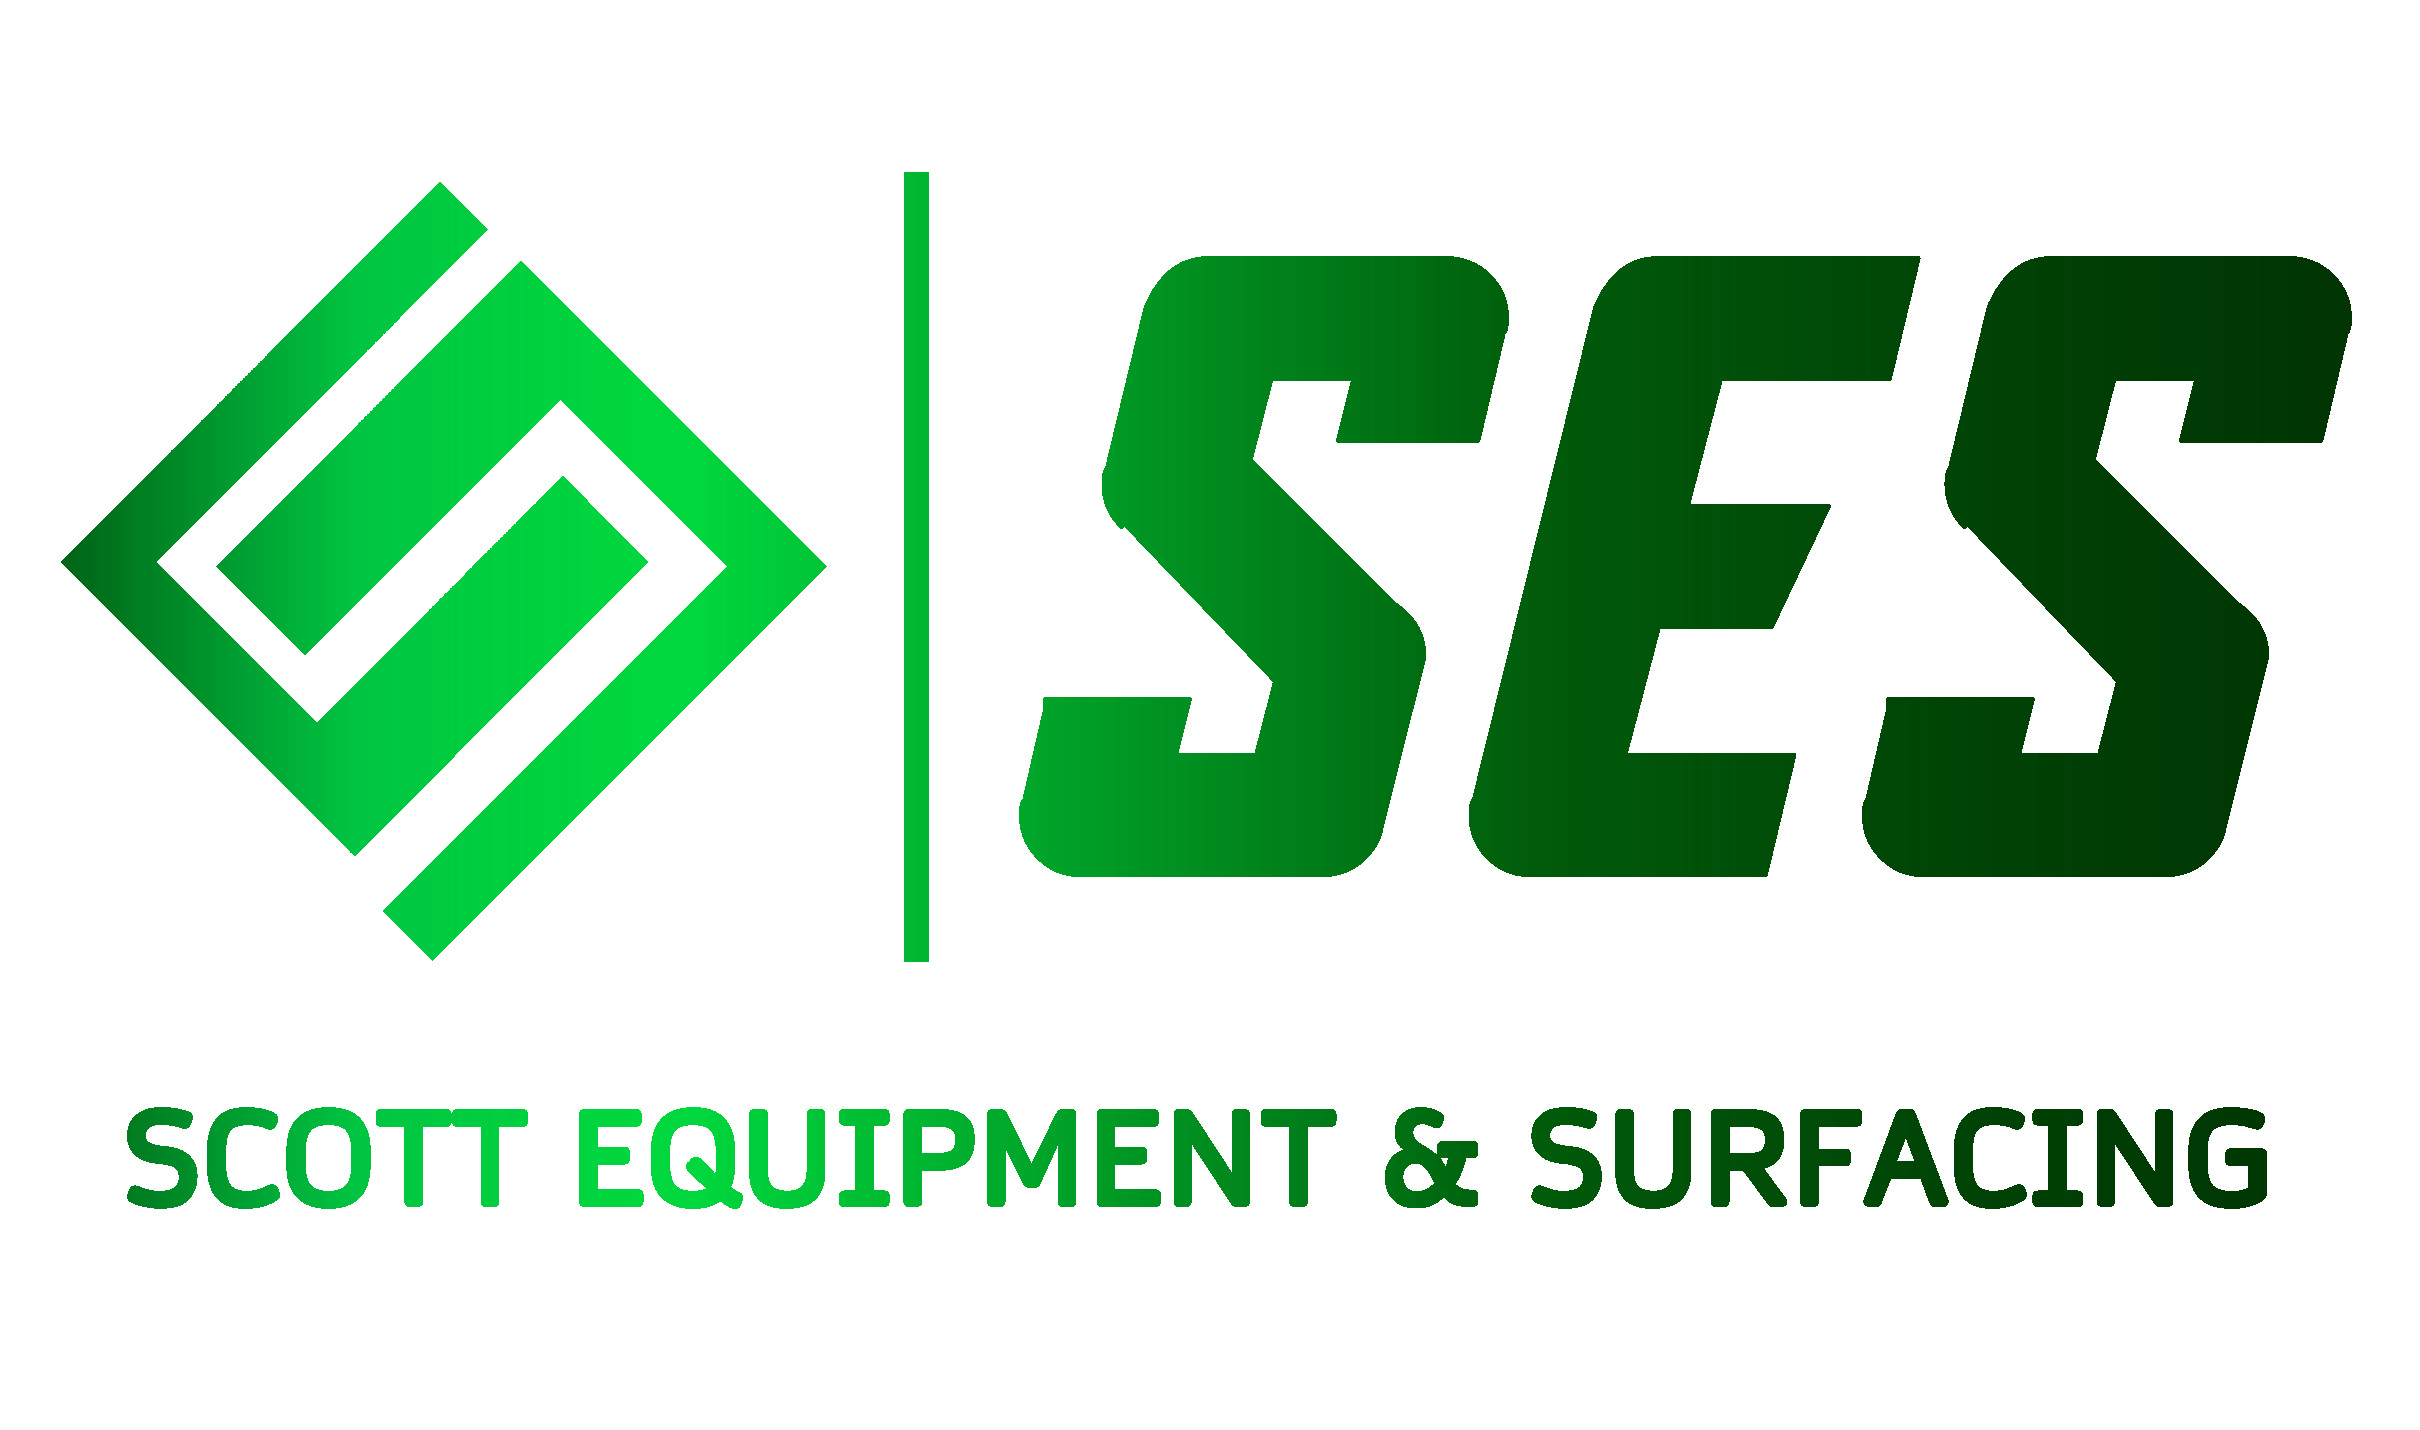 Scott Equipment and Surfacing